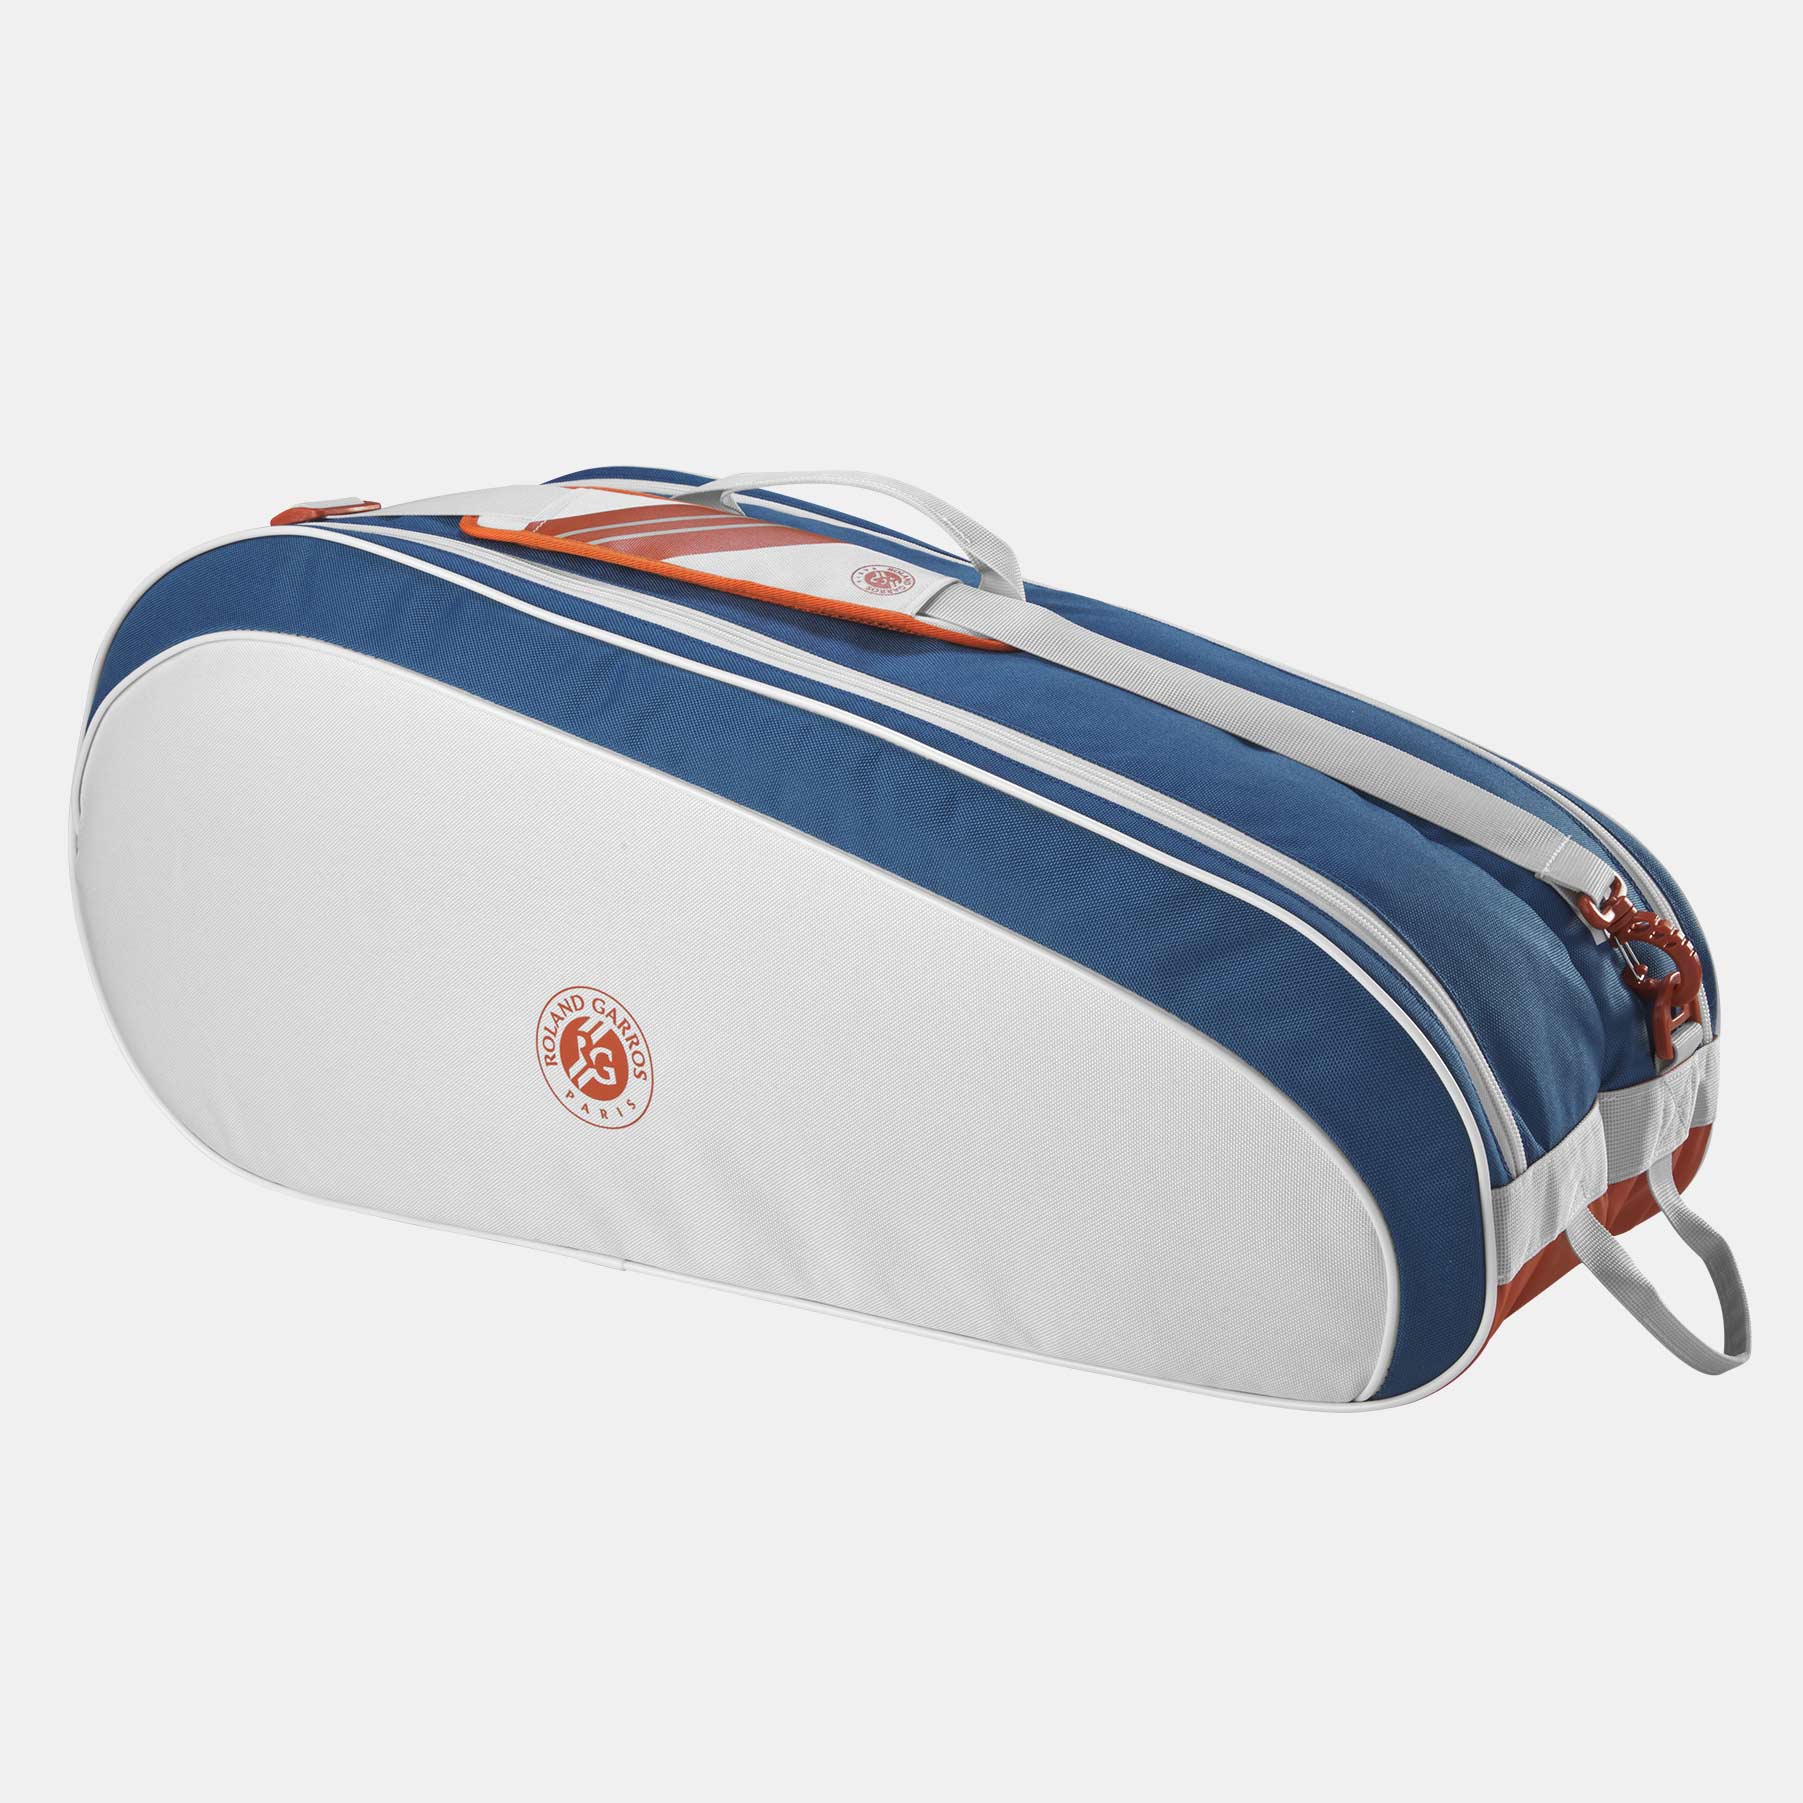 Wilson Roland Garros Team 6 Pack Cream/Navy/Orange